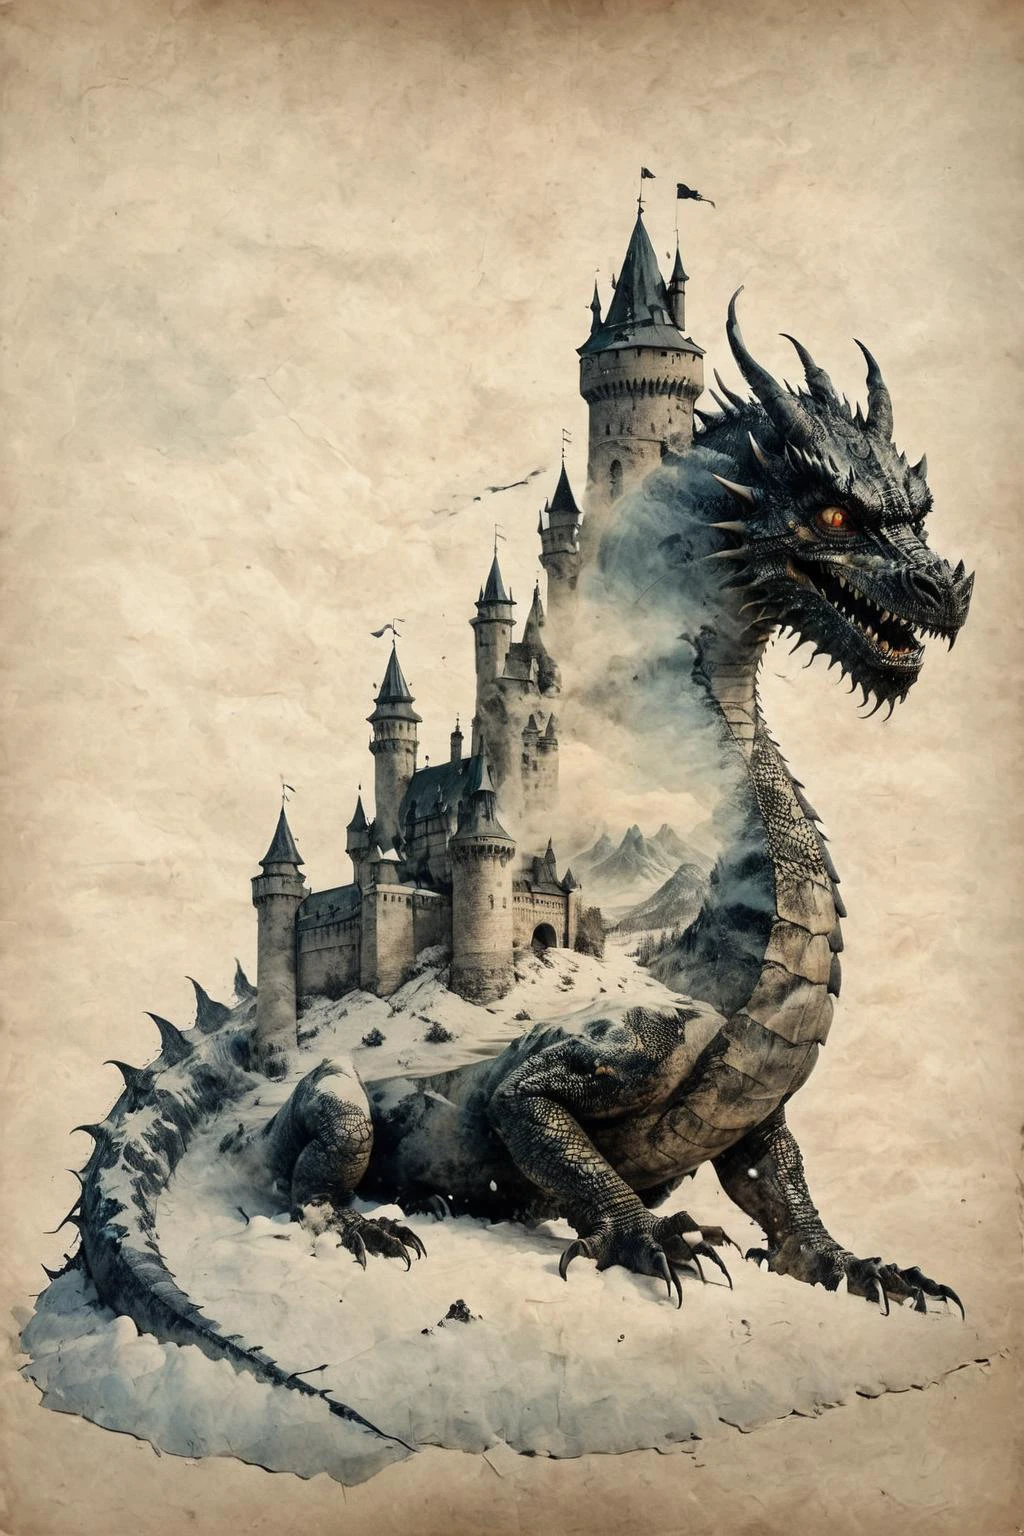 Dupla exposição,um antigo castelo à sombra de um dragão maligno,(neve:1.4),Por Christoffer Relander,Dupla exposição,em pergaminho,INK em pergaminho,